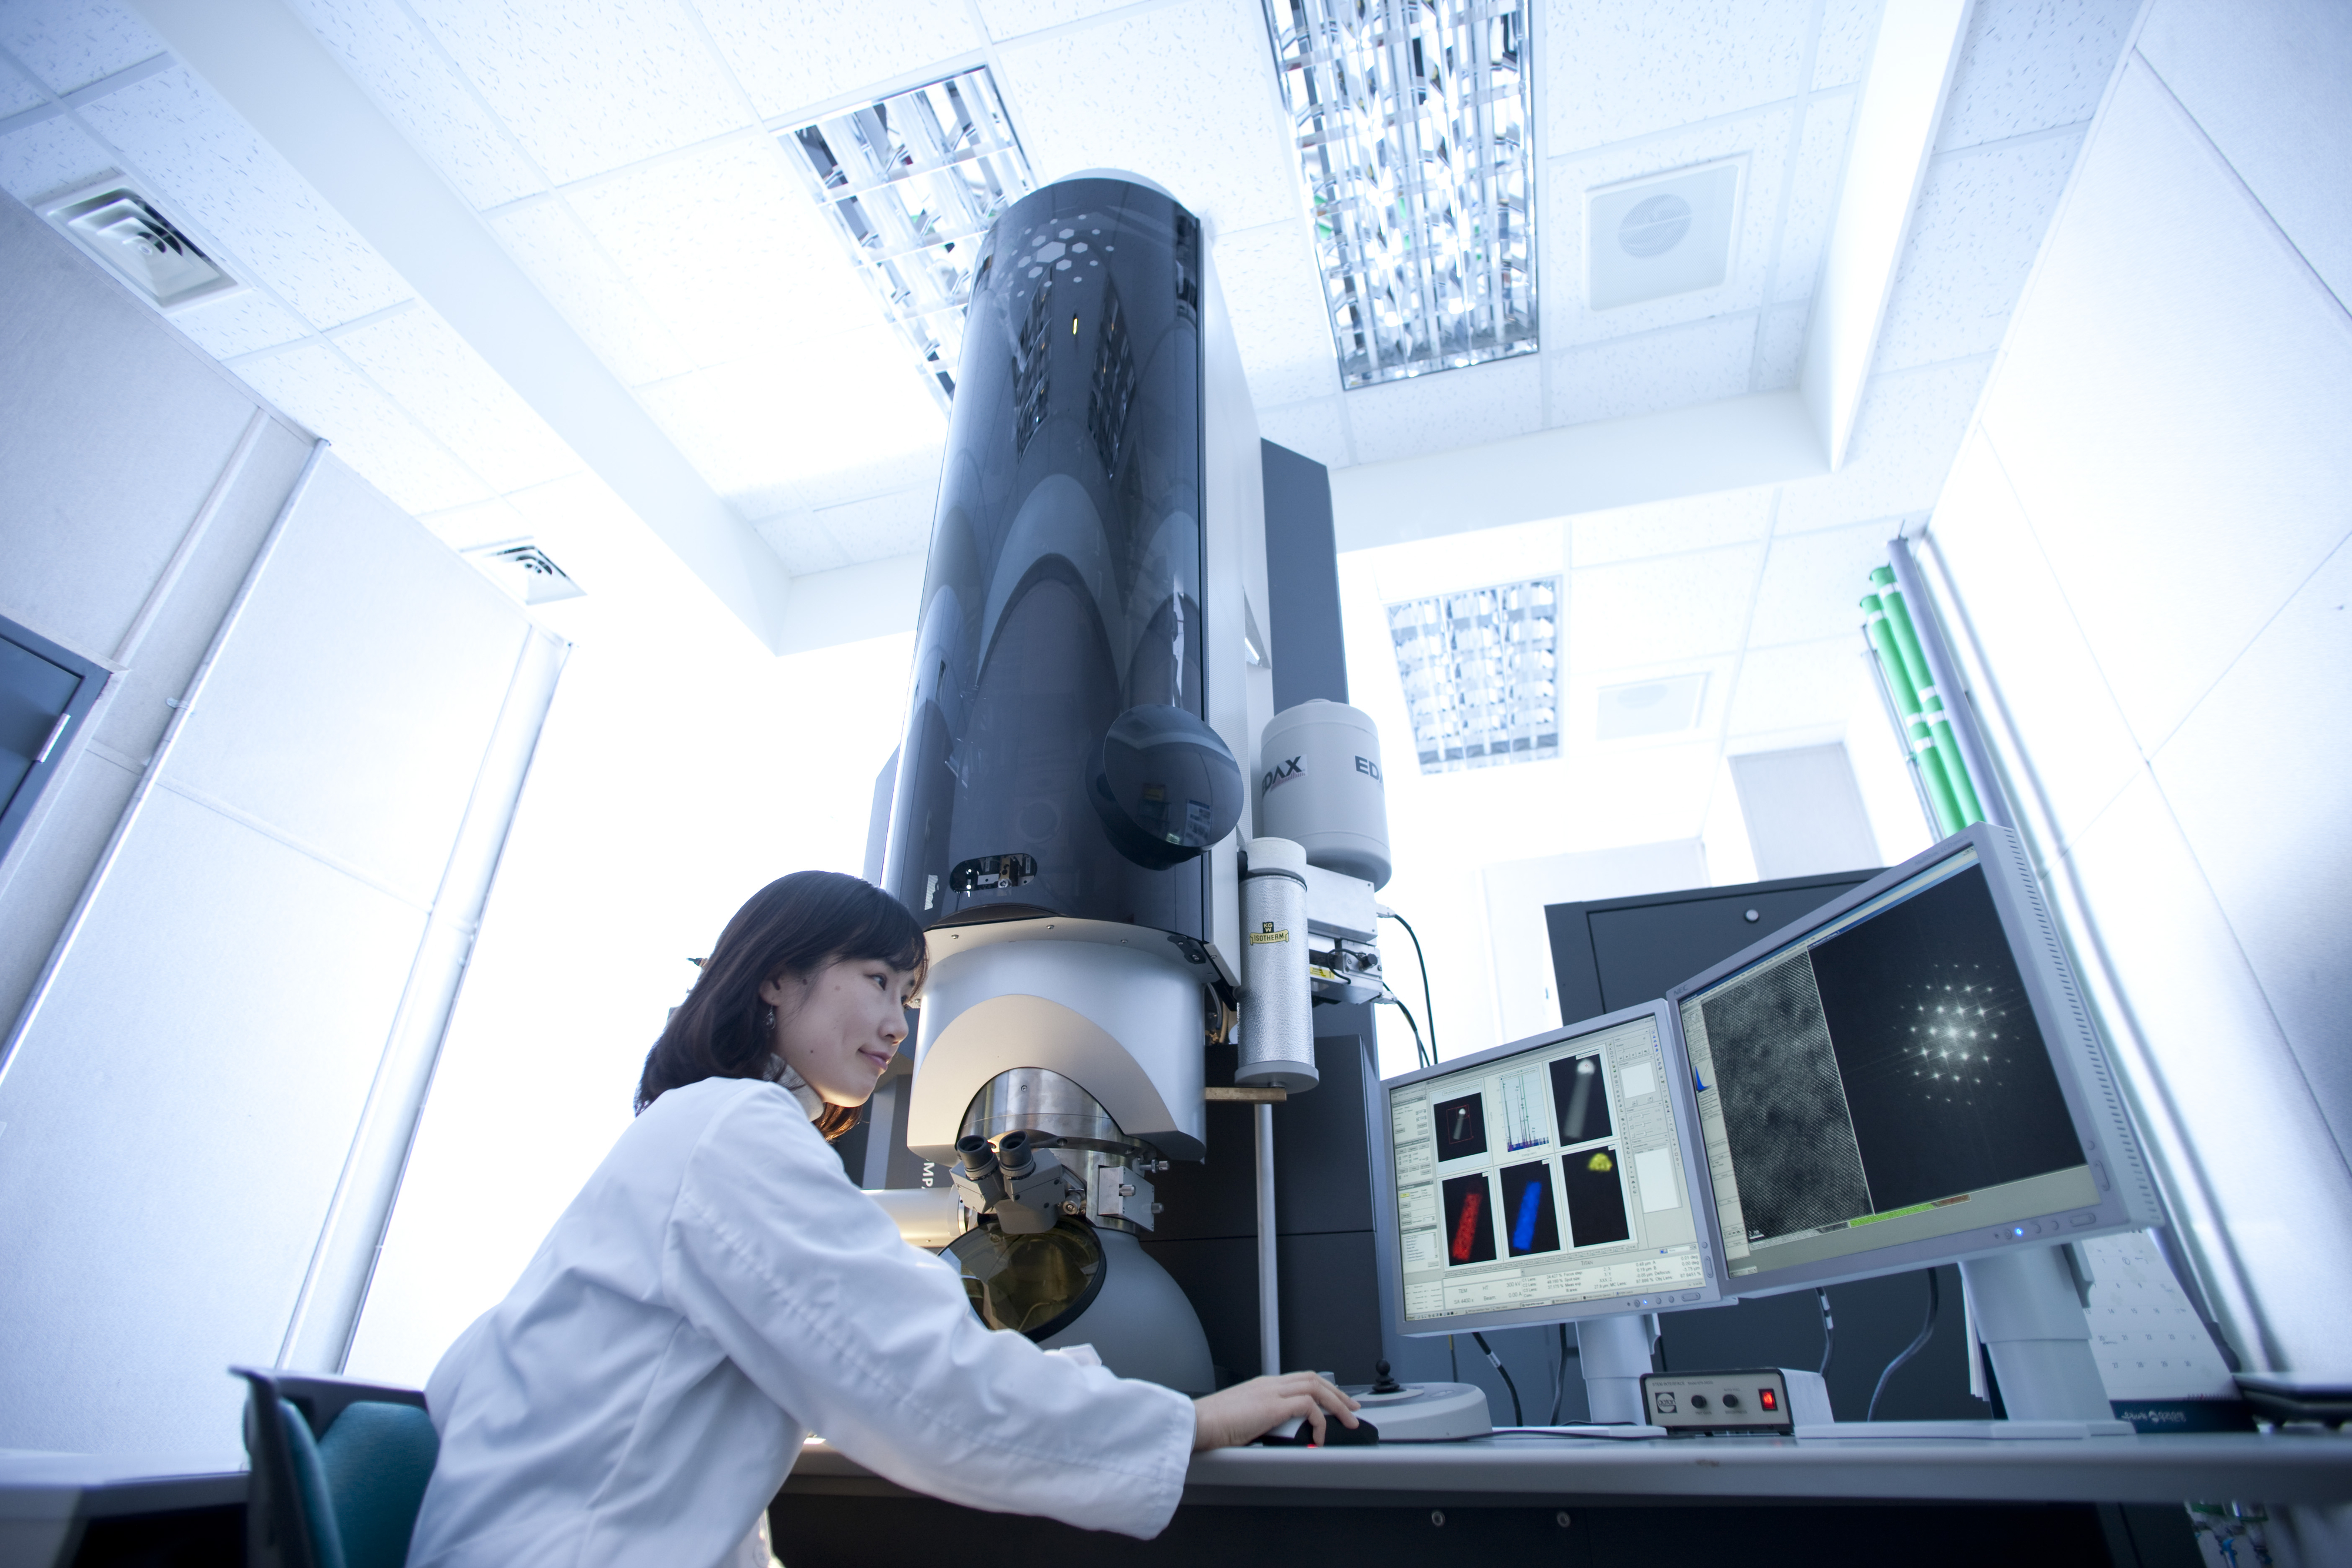 기초연구를 육성할 수 있는 첨단 연구장비 인프라. KIST 타이탄 현미경은 세계 최고 수준의 슈퍼 전자현미경이다. KIST 제공